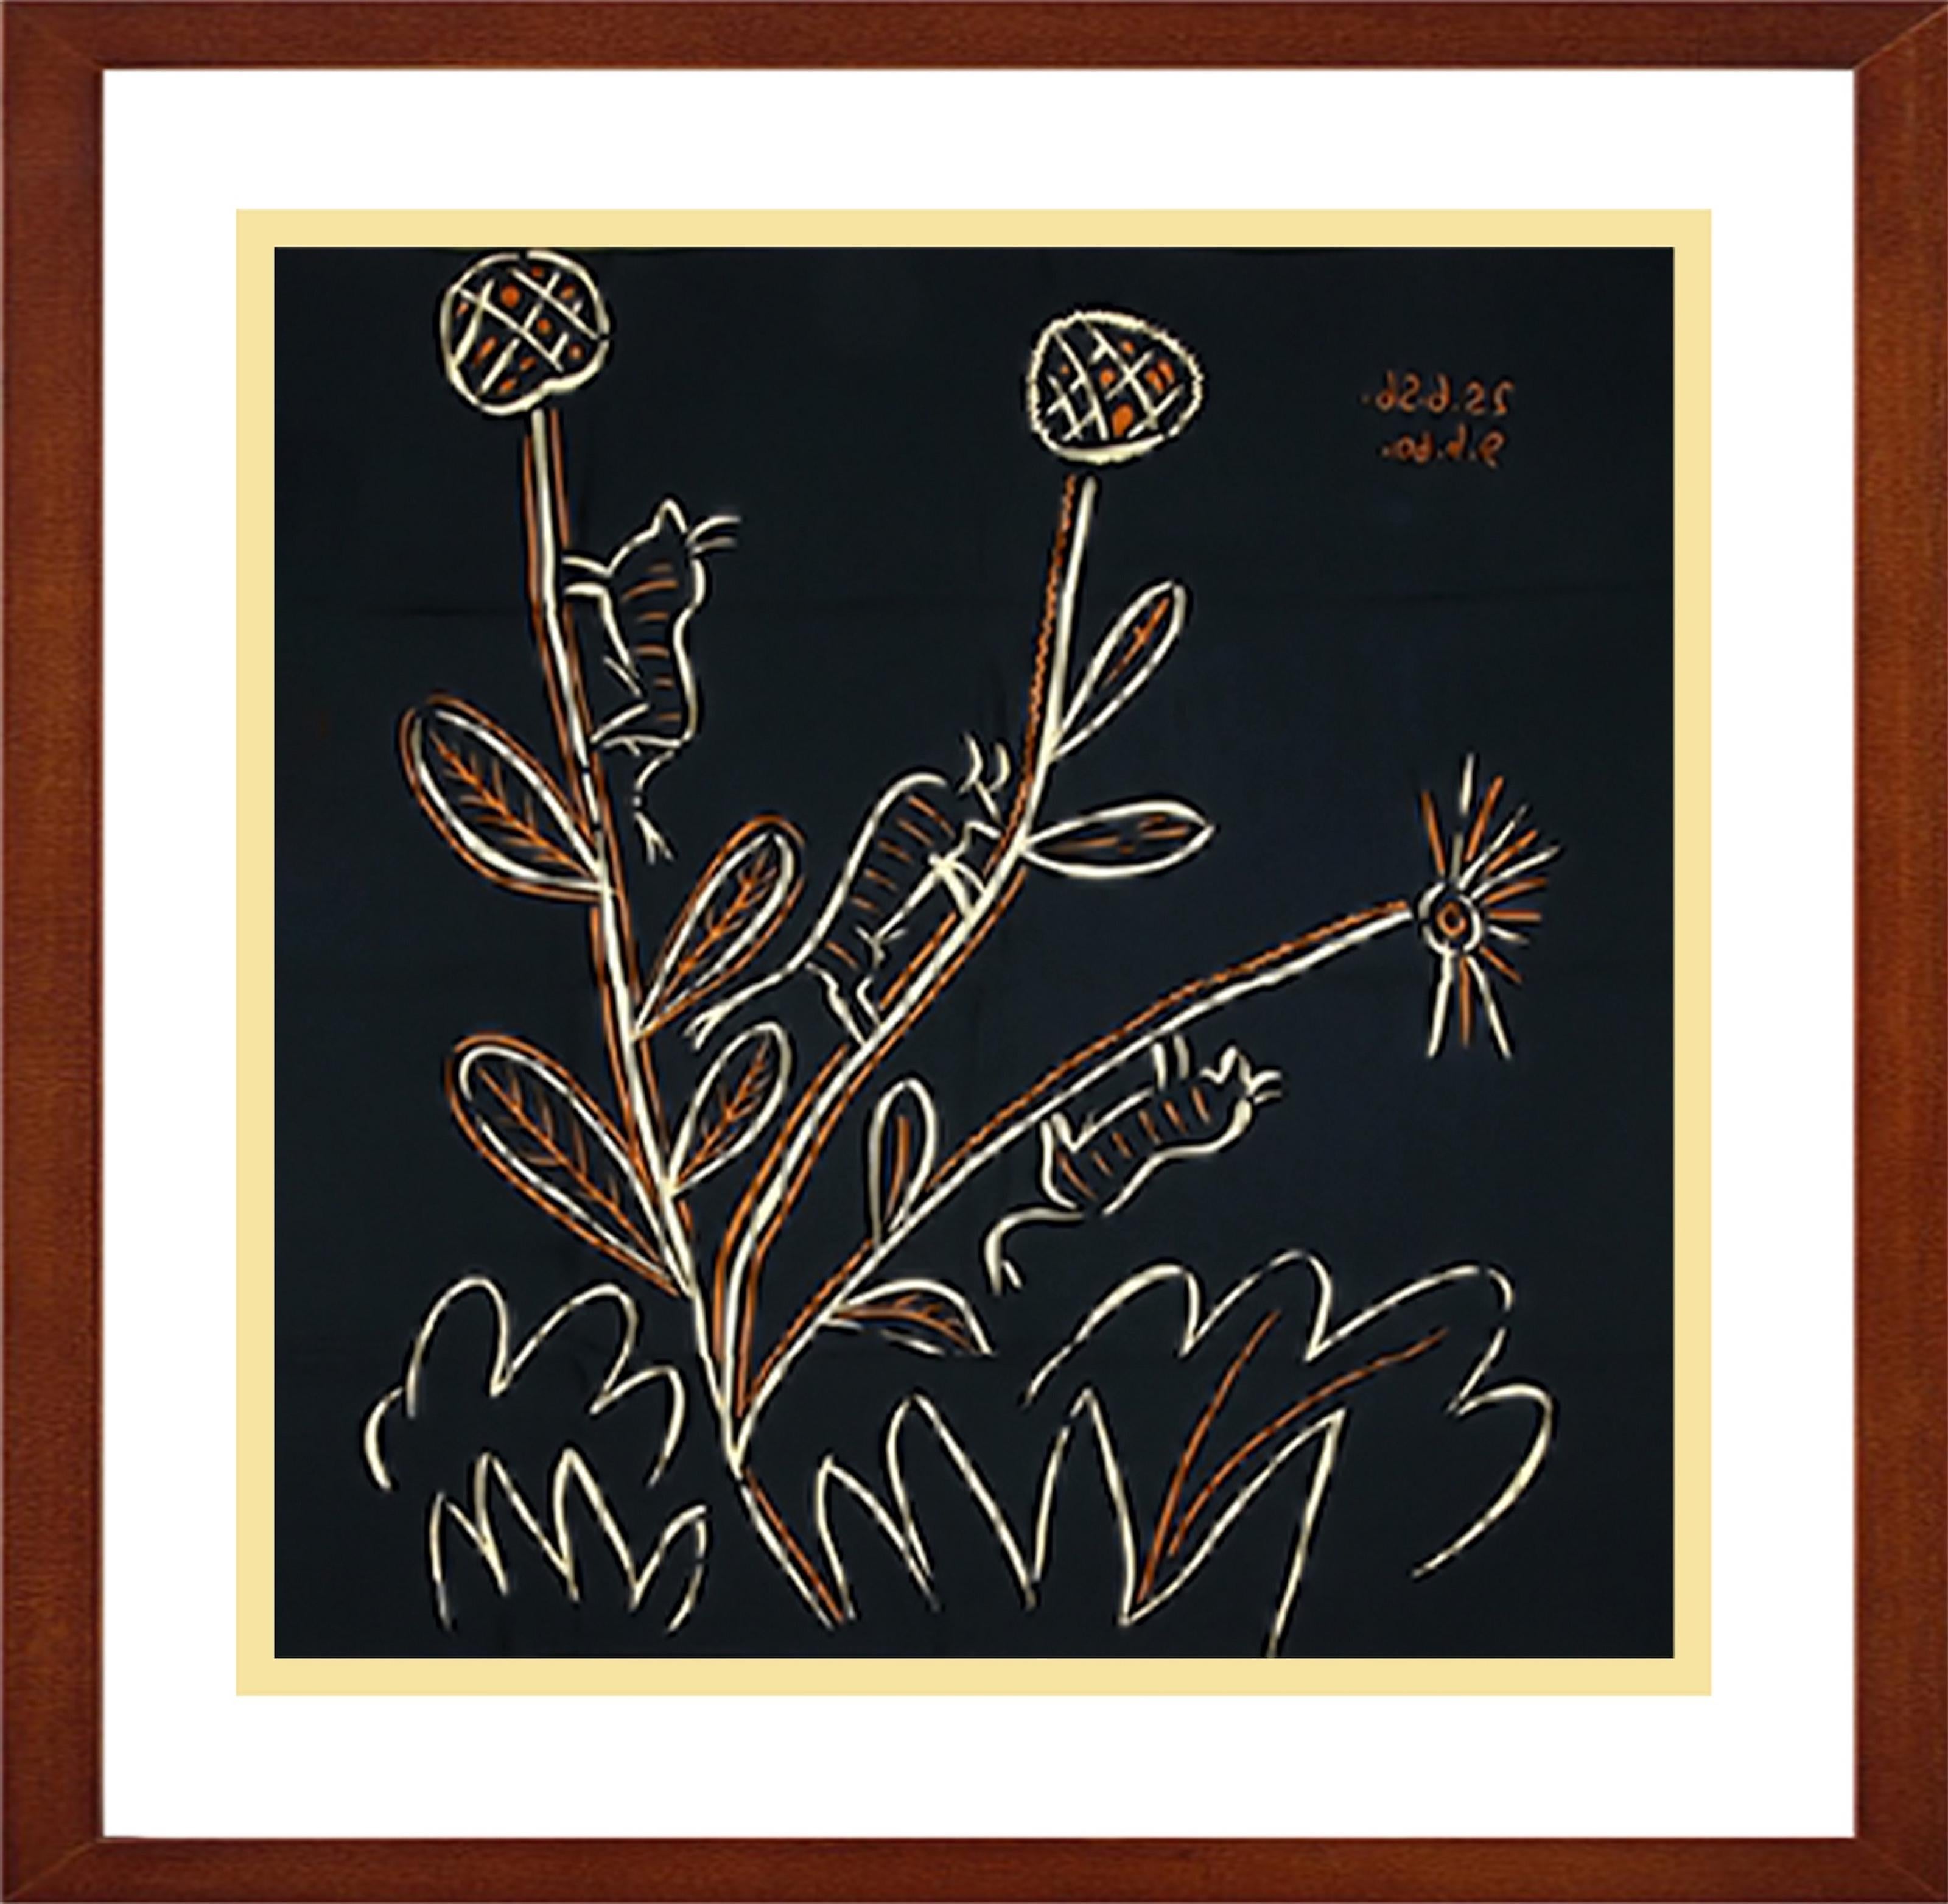 Lieferkosten auf Anfrage
"Plante aux Toritos", Kunstwerk des Künstlers Pablo Picasso.
Abstrakte, humorvolle Darstellung von Flora und Fauna.
Bedruckter Seidenschal (reine Seide) nach einem Linolschnitt von Picasso.
Erste Version: Im Geschenkkarton /